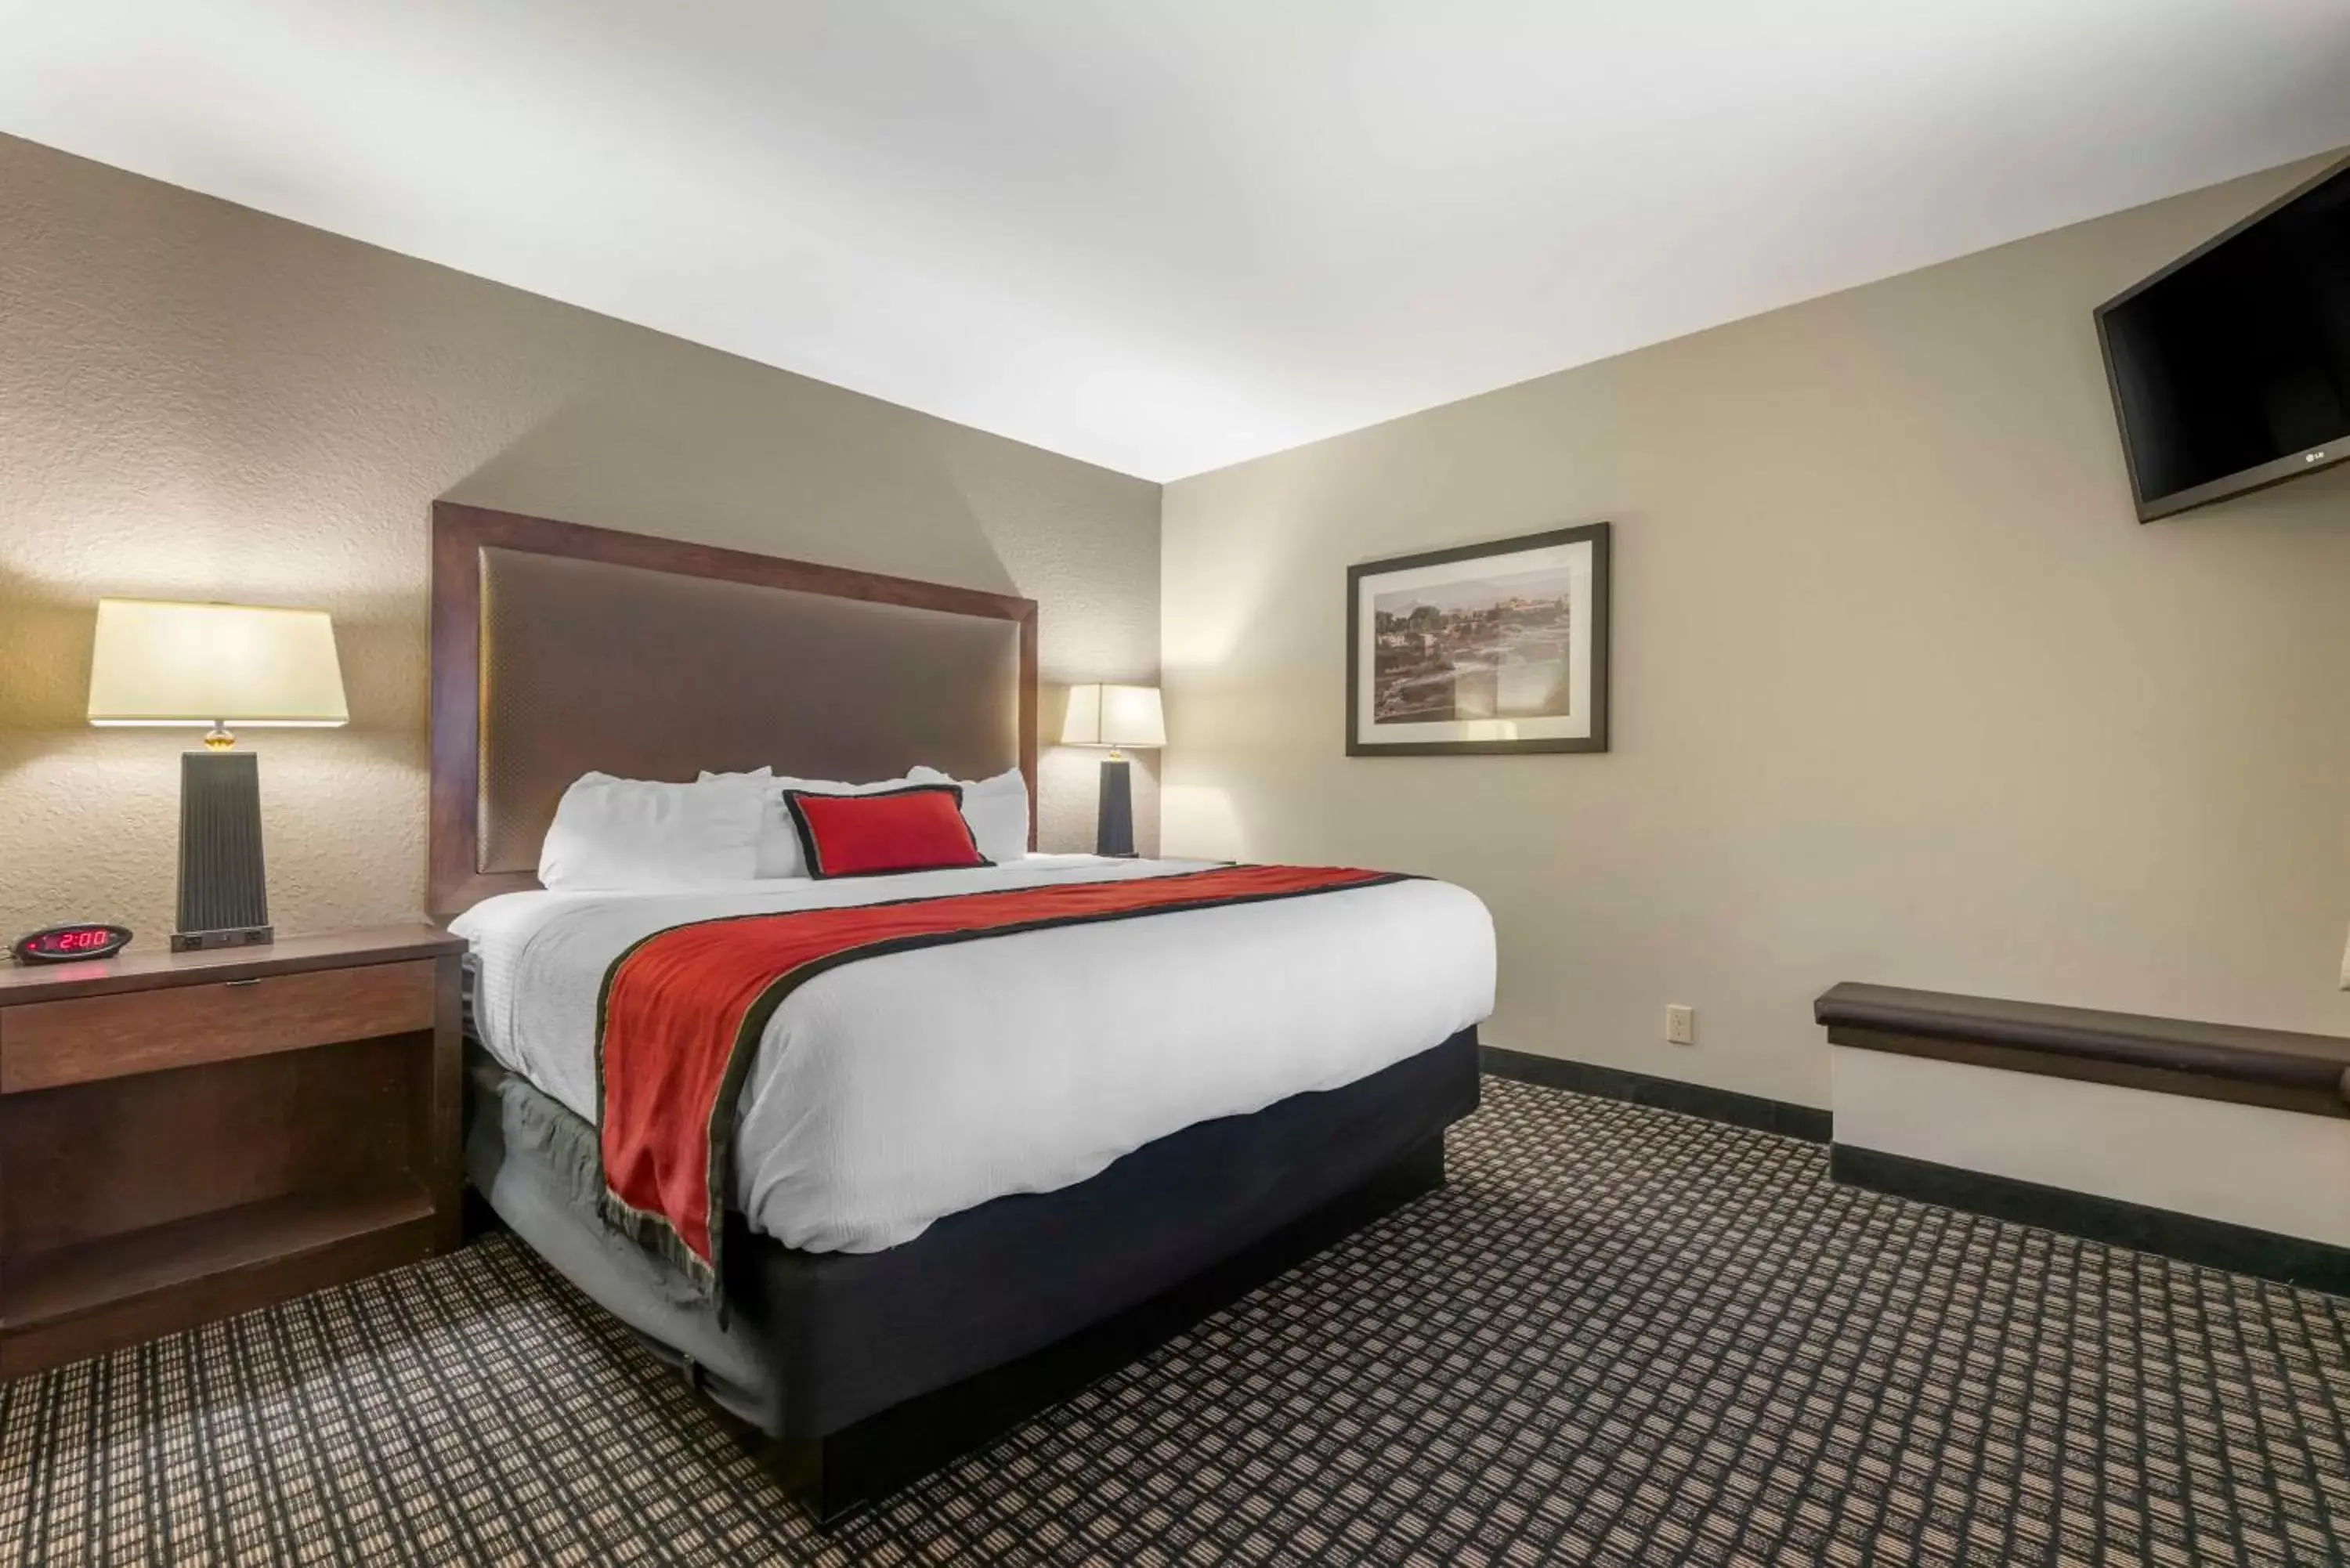 Bedroom, Bed in Best Western Plus Ramkota Hotel